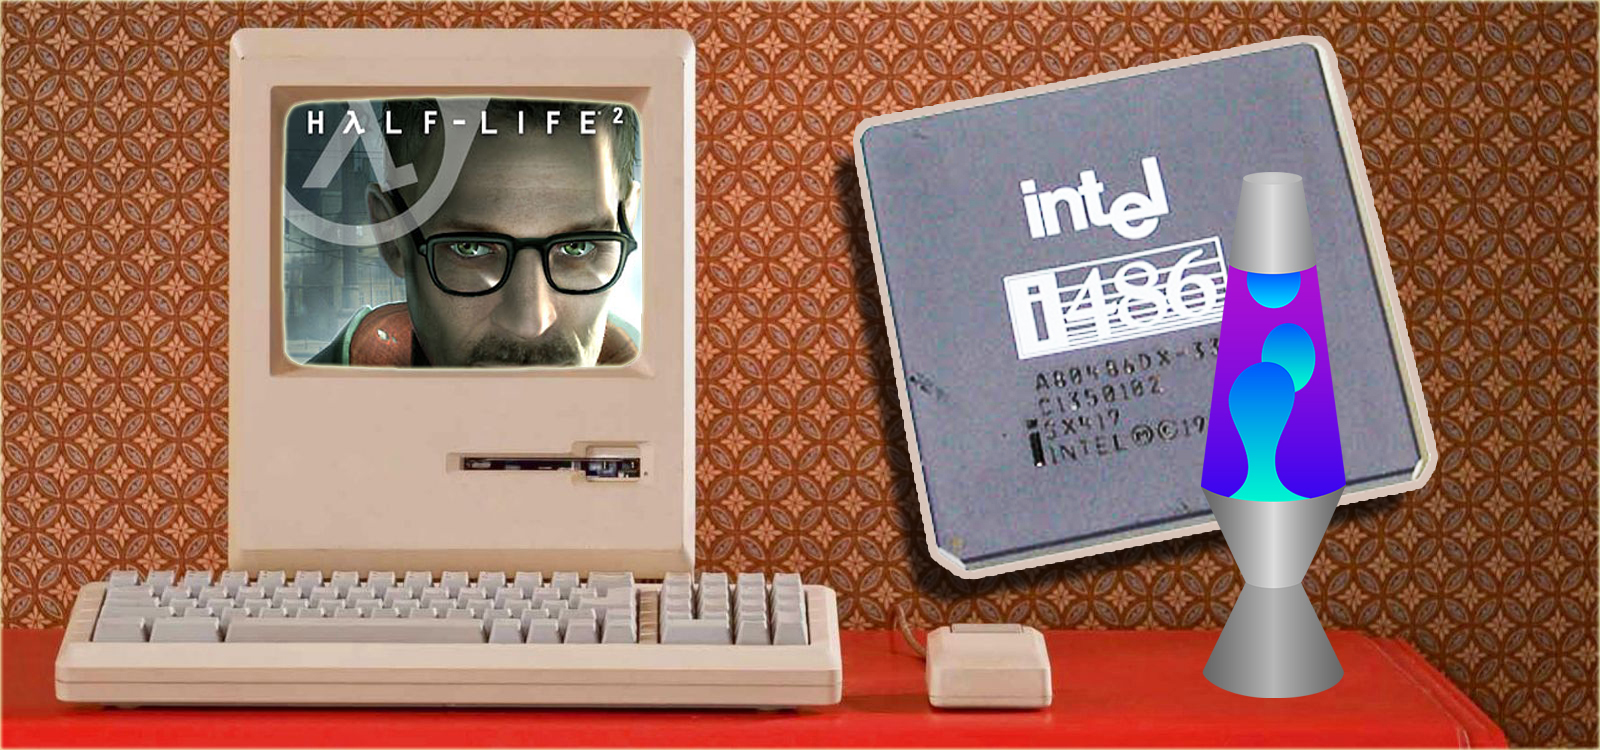 Попытка запустить Half-Life 2 на Intel486DX процессоре ??